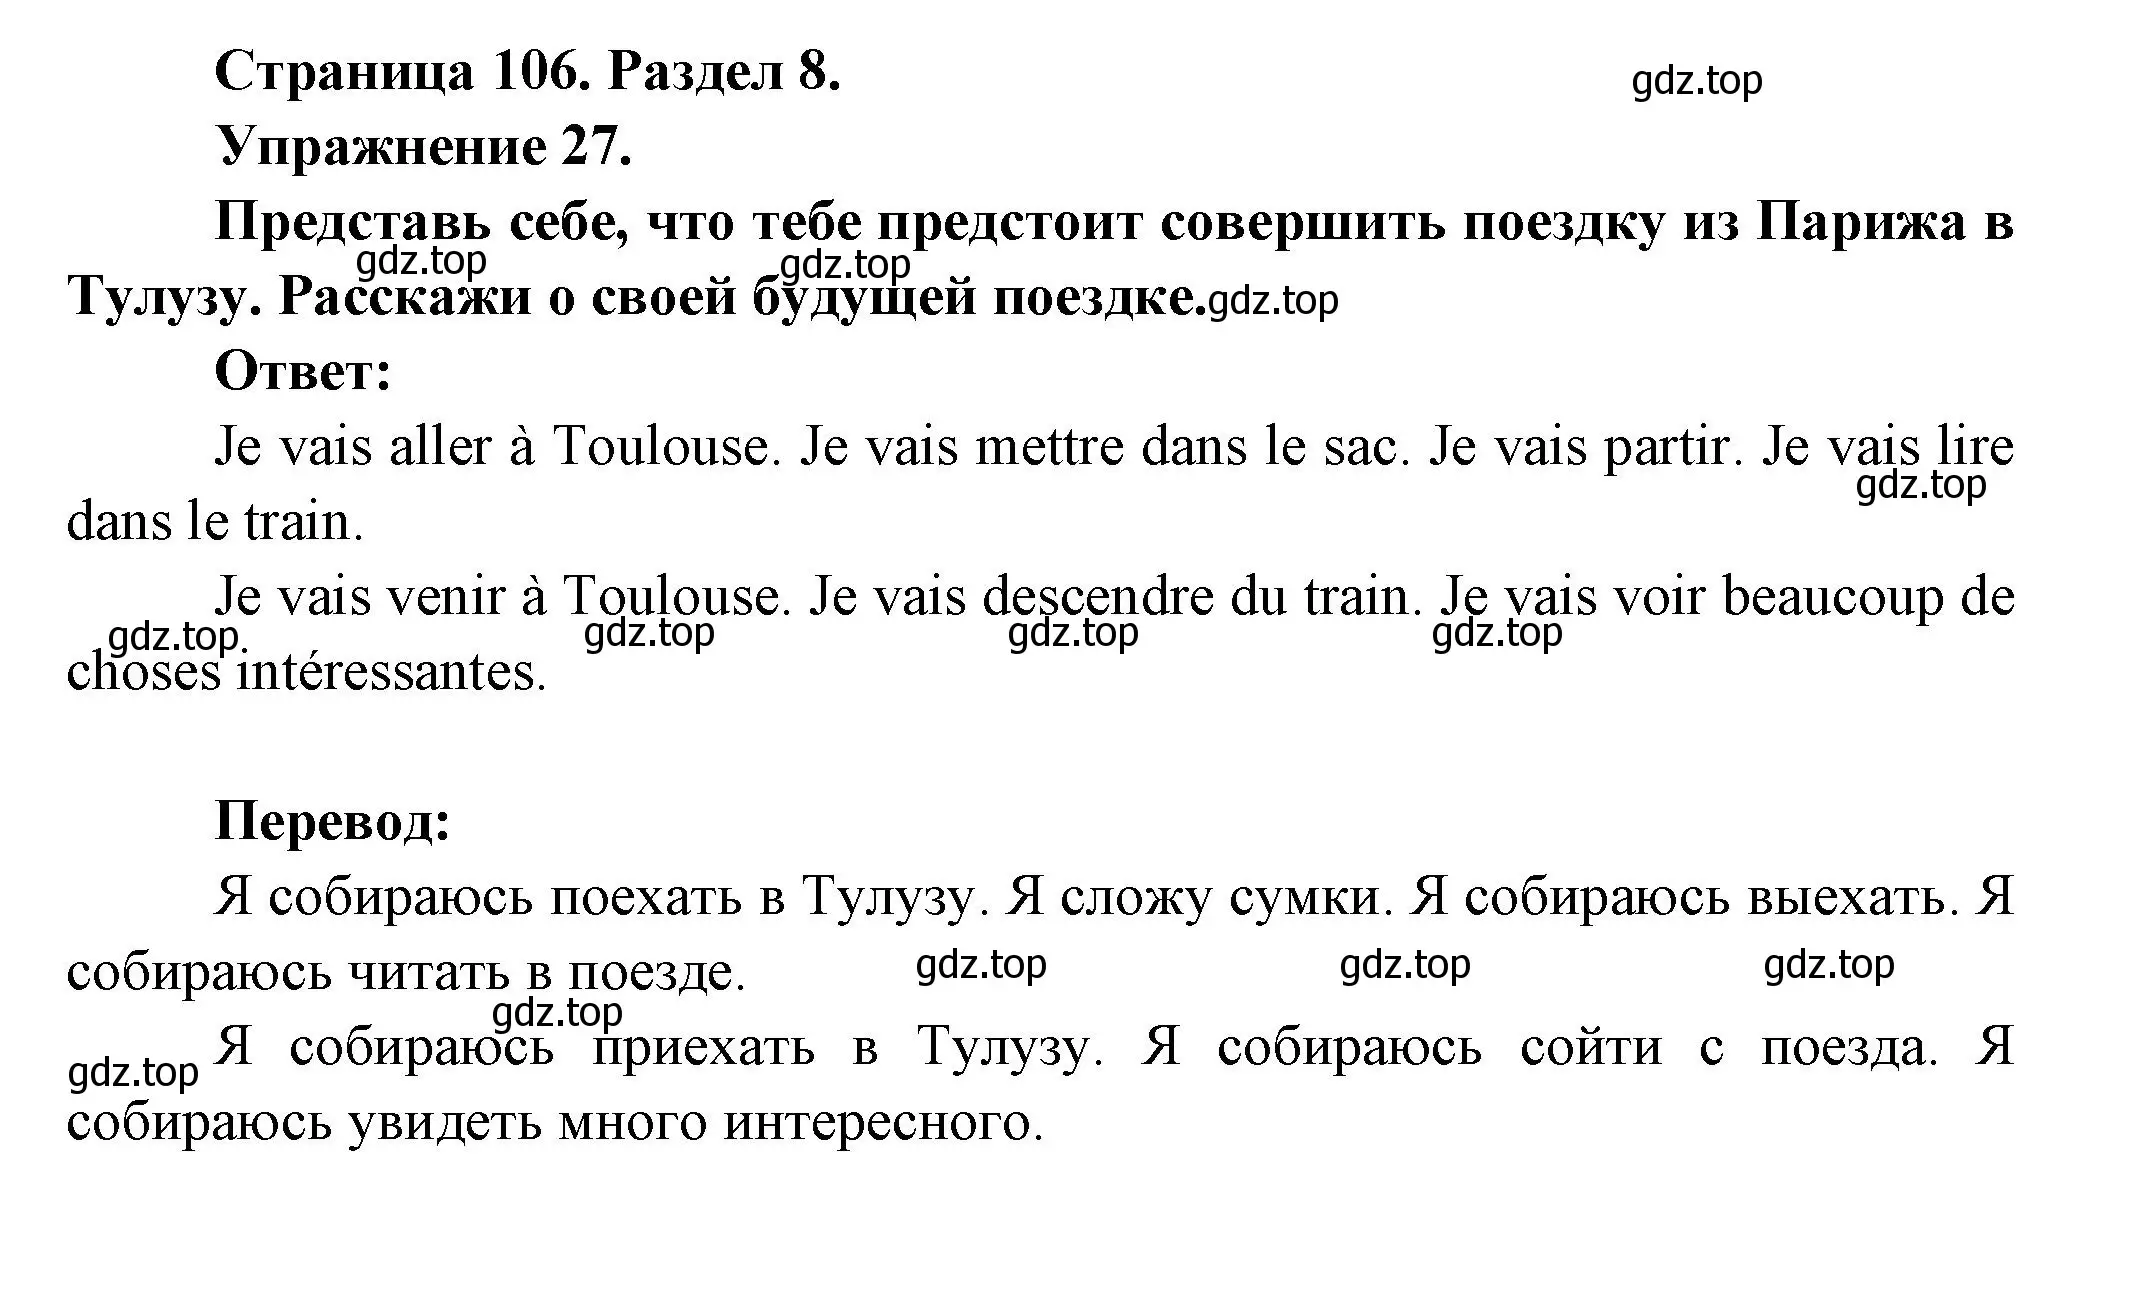 Решение номер 27 (страница 106) гдз по французскому языку 5 класс Береговская, Белосельская, учебник 2 часть